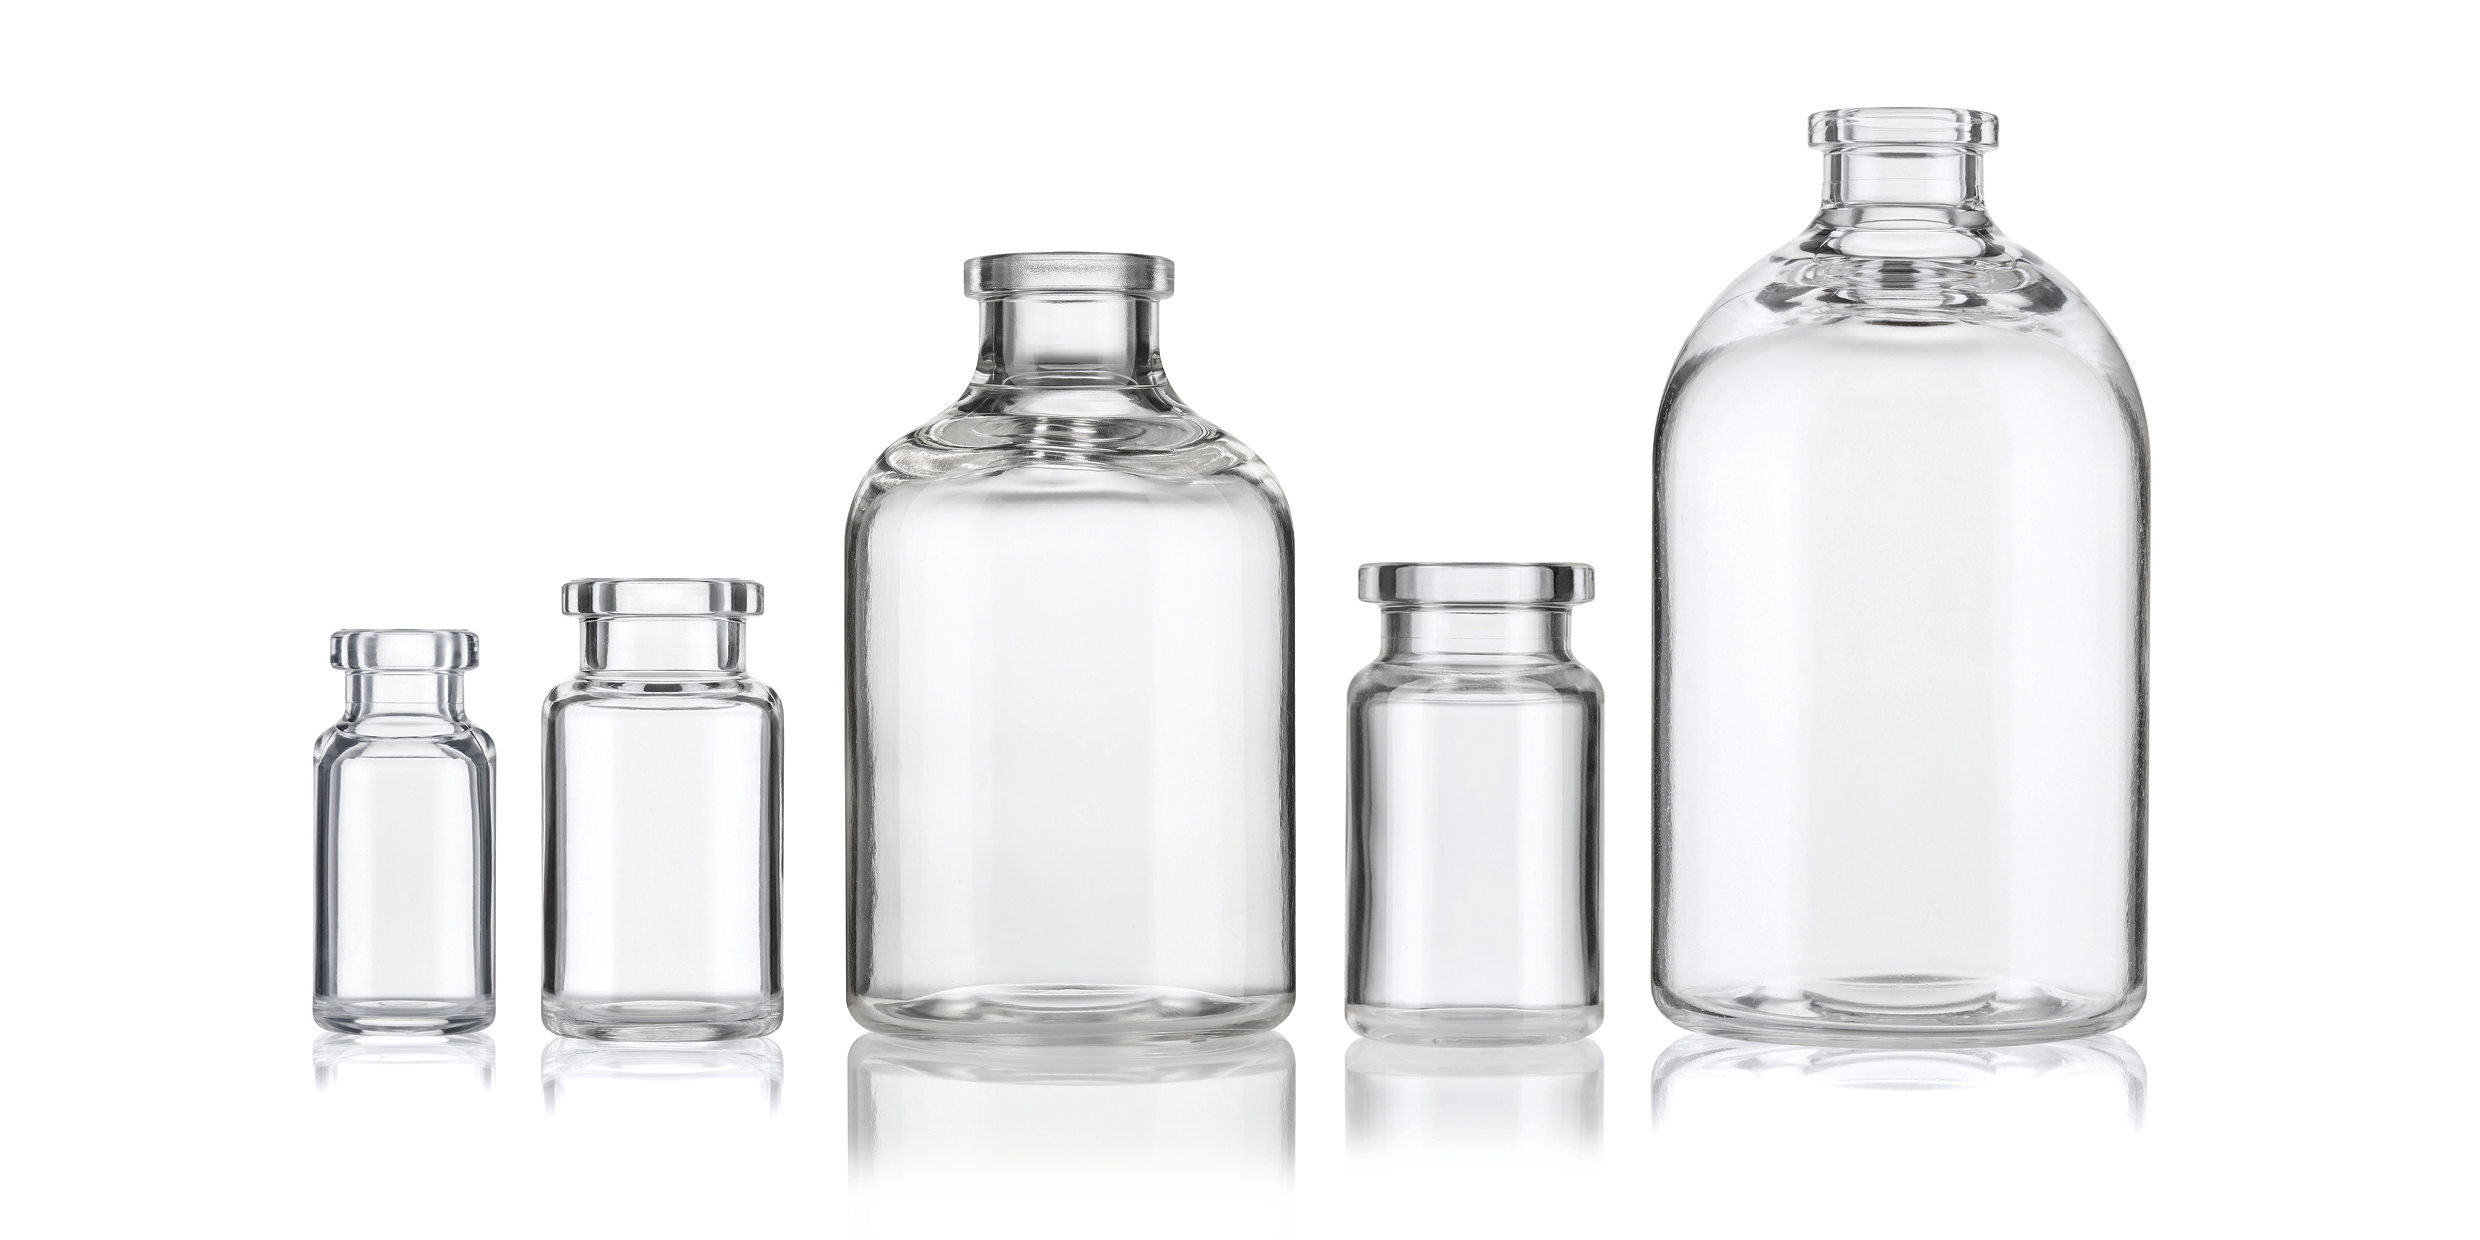 Primary Packaging Plastics - Monolayer plastic vials